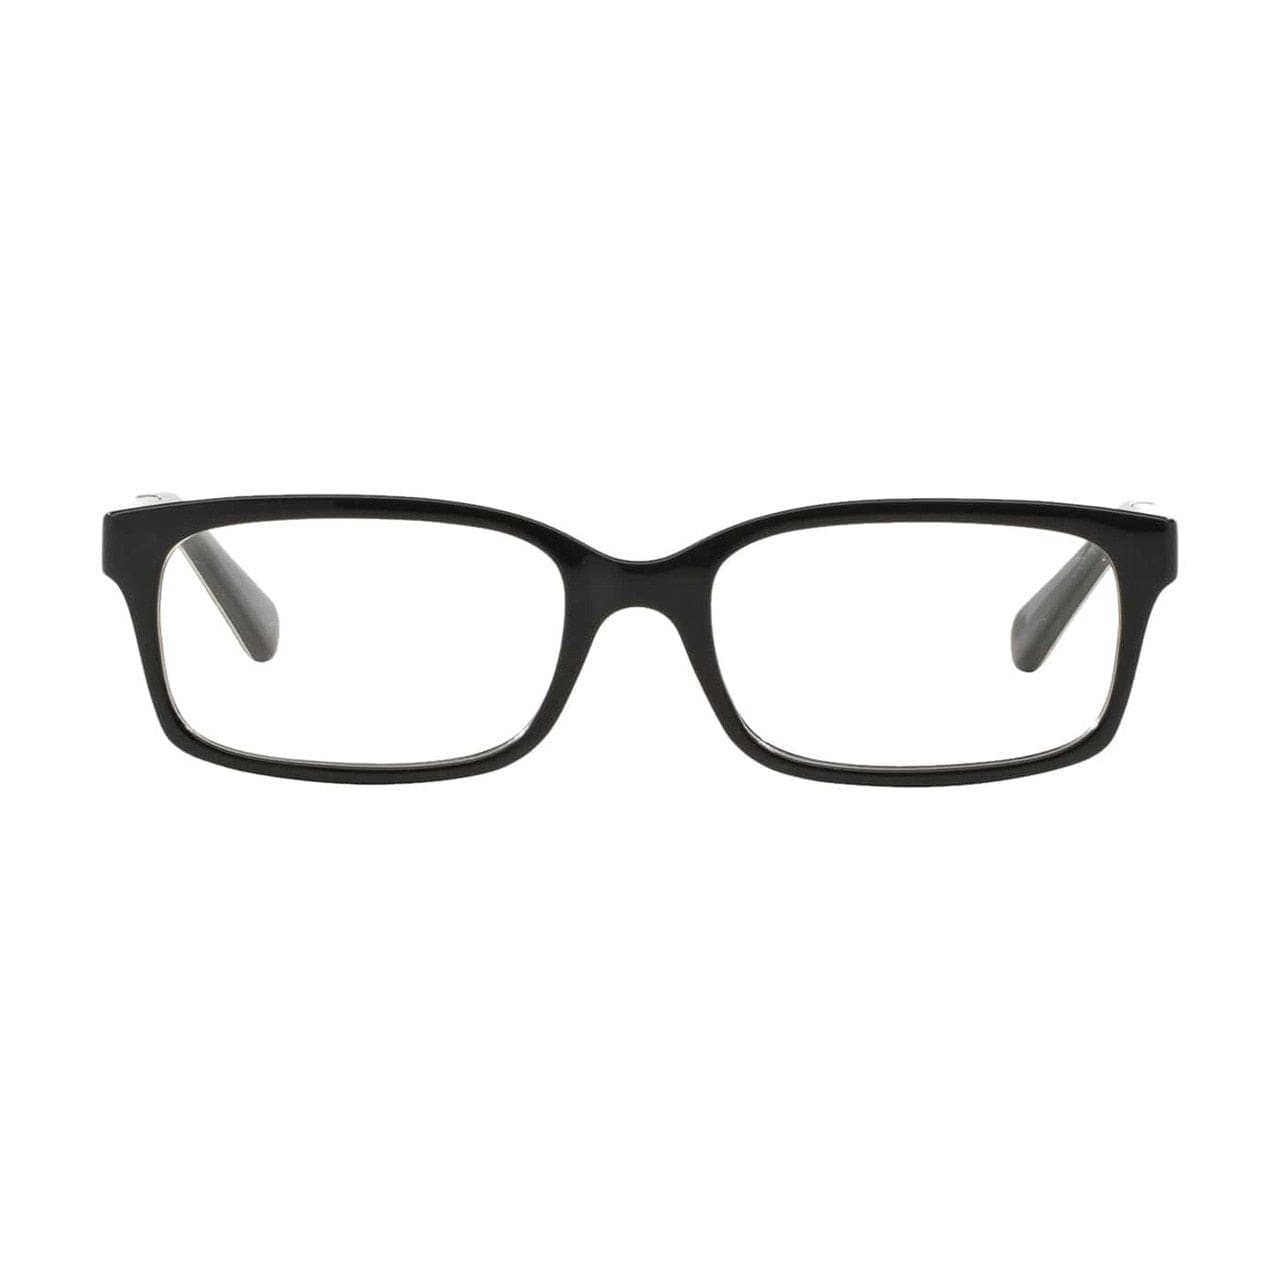 Michael Kors MK 8006-3009 Medellin Black Tortoise Rectangular Acetate Eyeglasses 725125944755